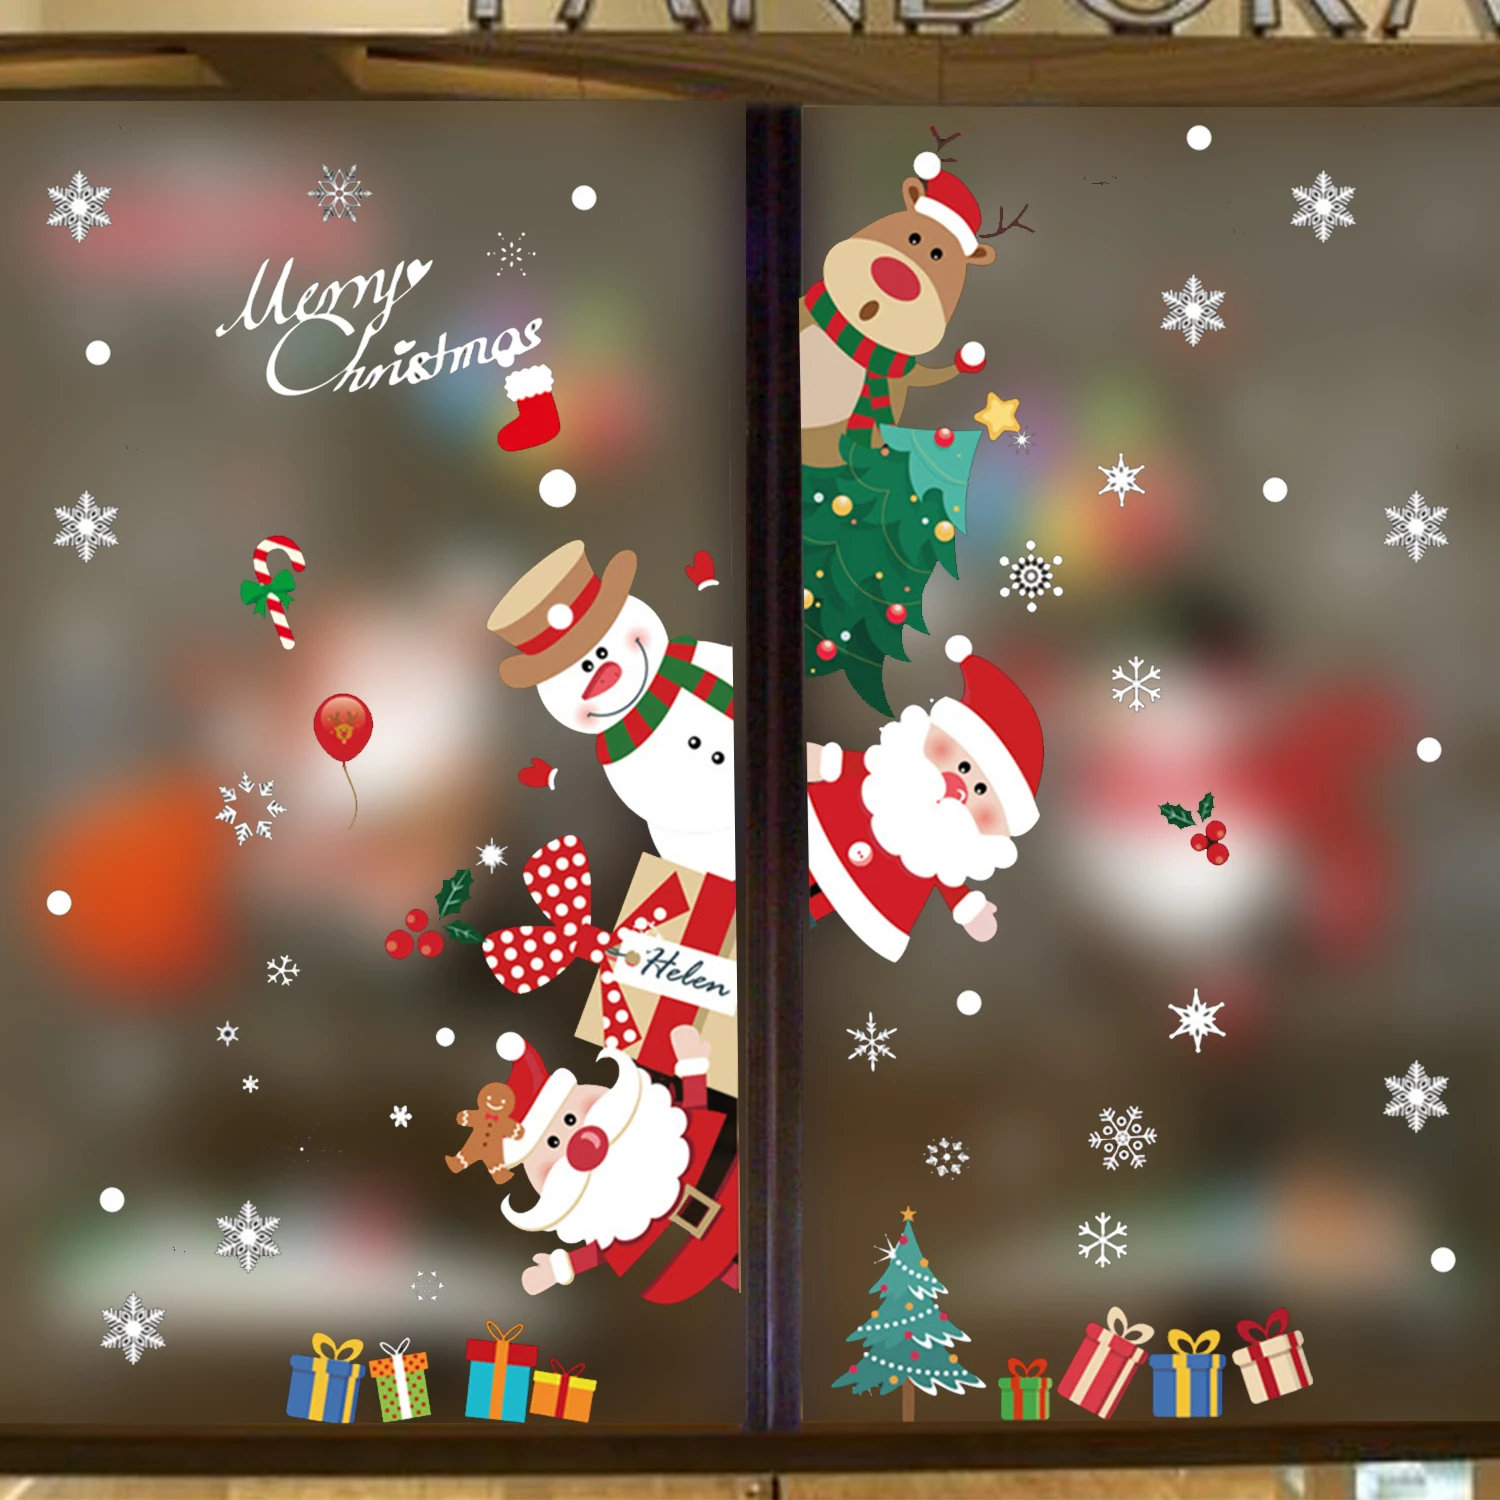 Рождественские наклейки на окна Счастливого Рождества Украшения Для Дома Рождественская Наклейка Стена Детская Комната Наклейки Новогодние Наклейки 0